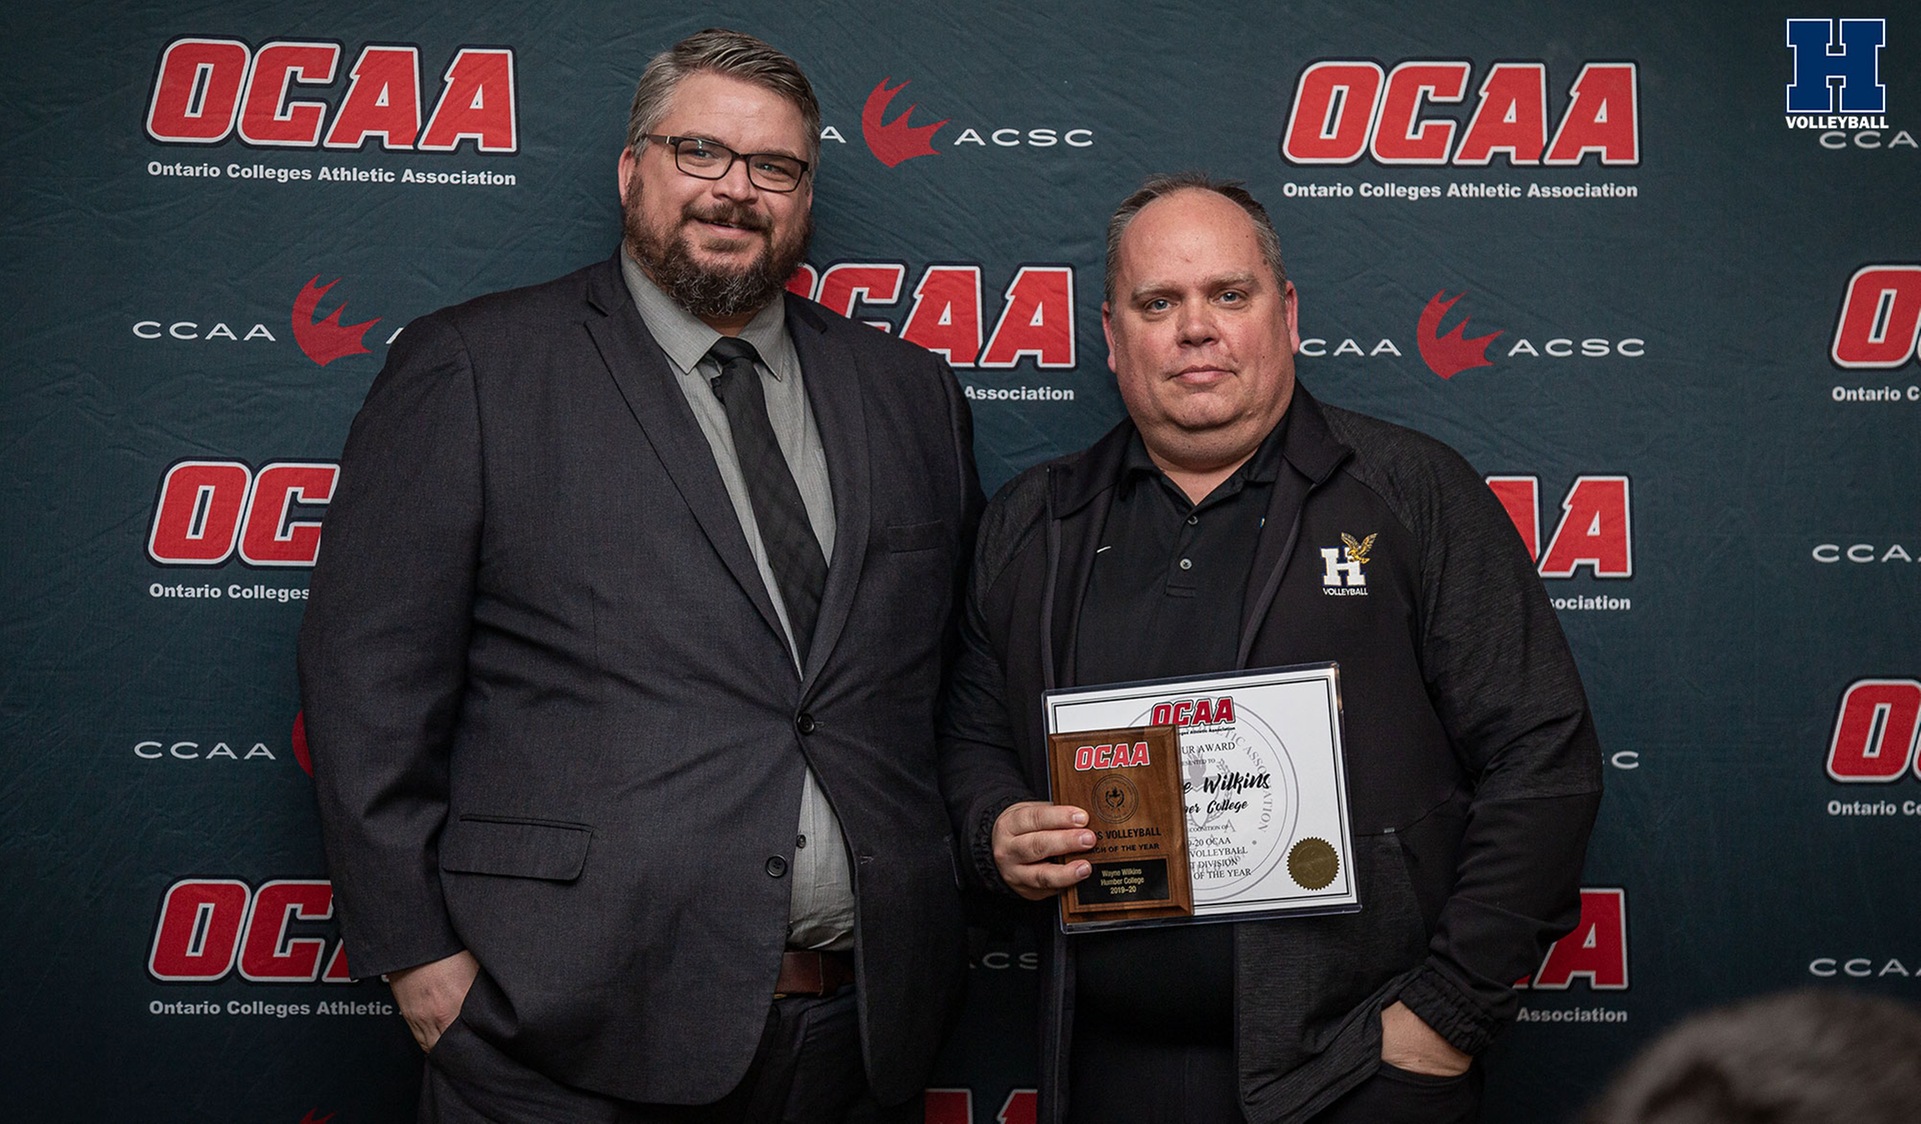 Wilkins Grabs OCAA’s Top Award